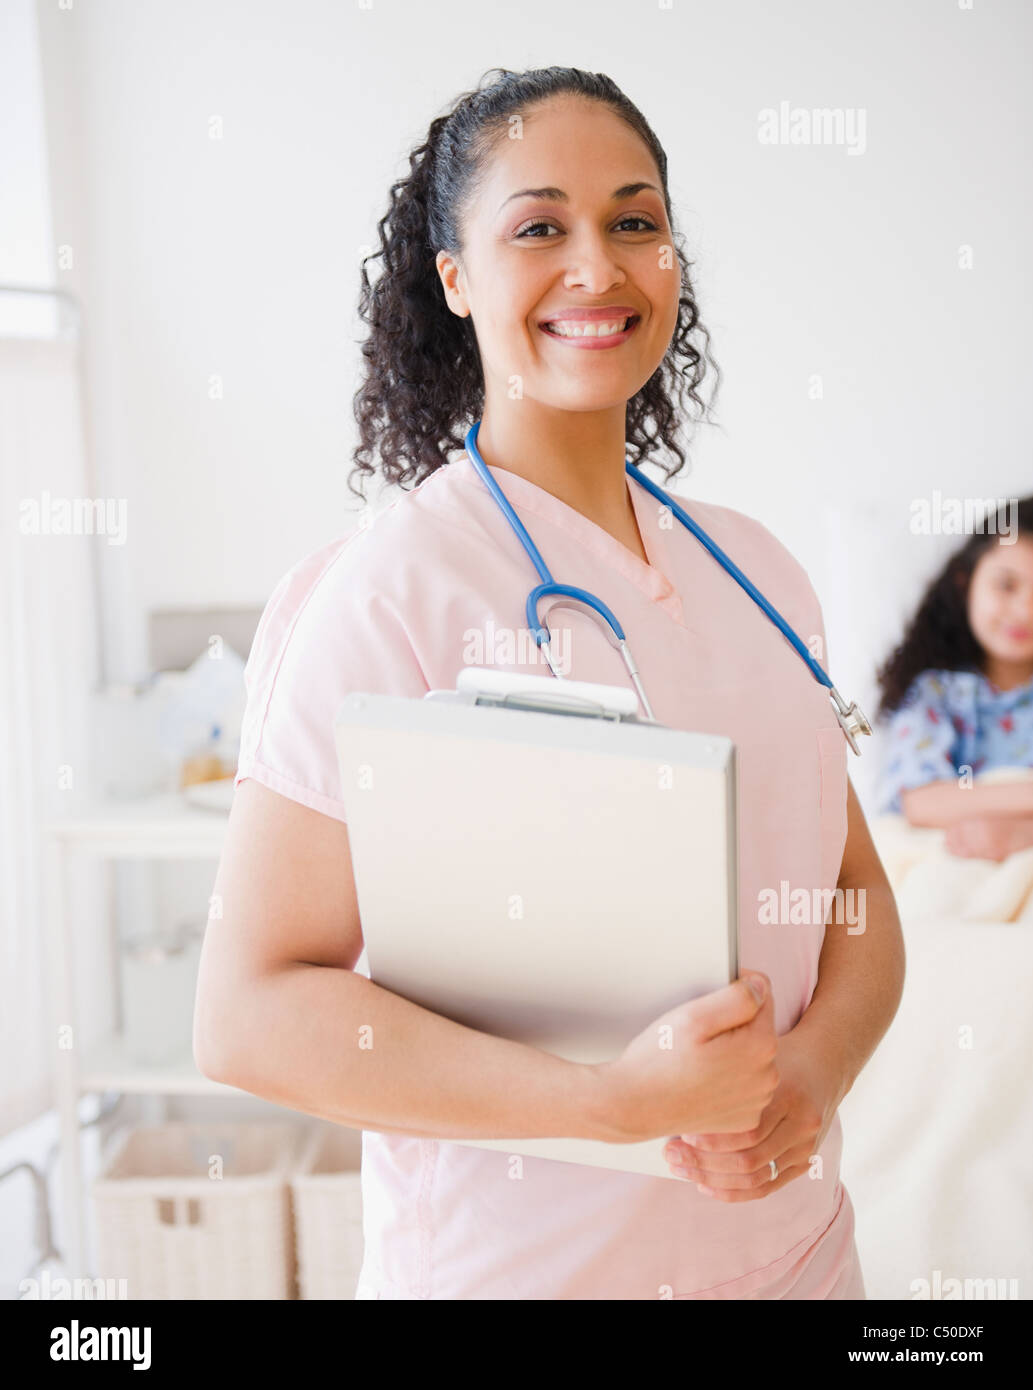 Lächelnd Mischlinge Krankenschwester im Krankenzimmer Stockfoto